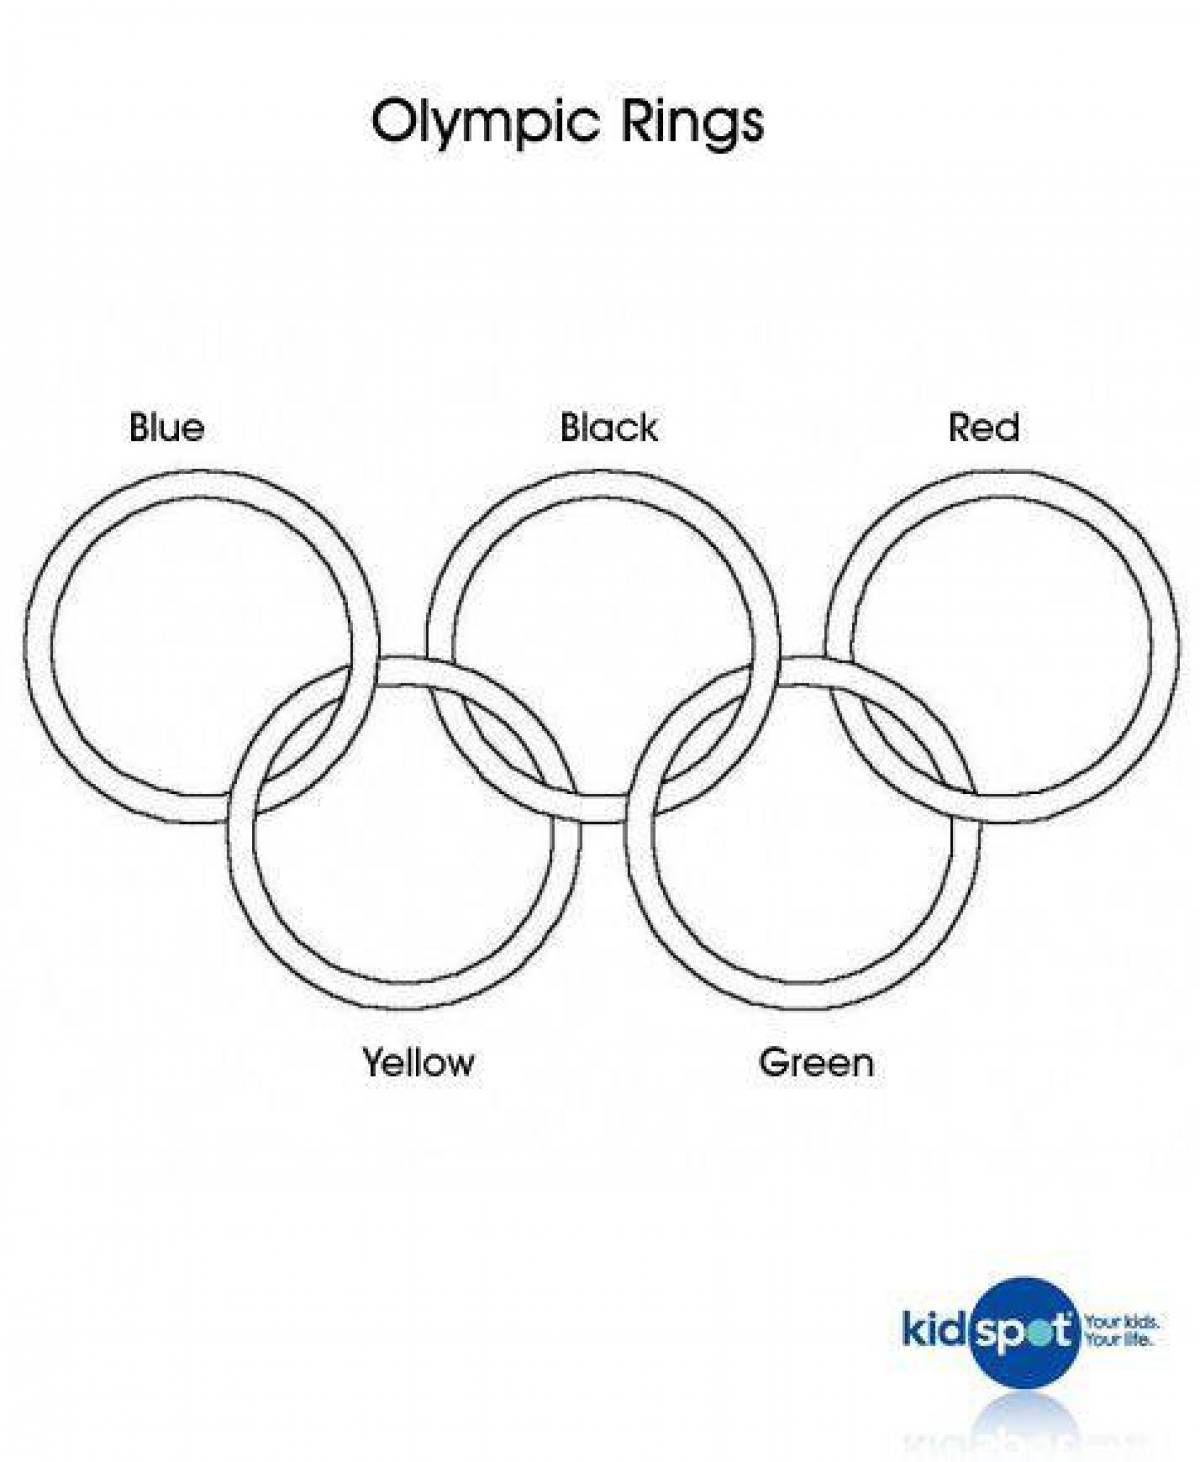 Раскраска роскошные олимпийские кольца